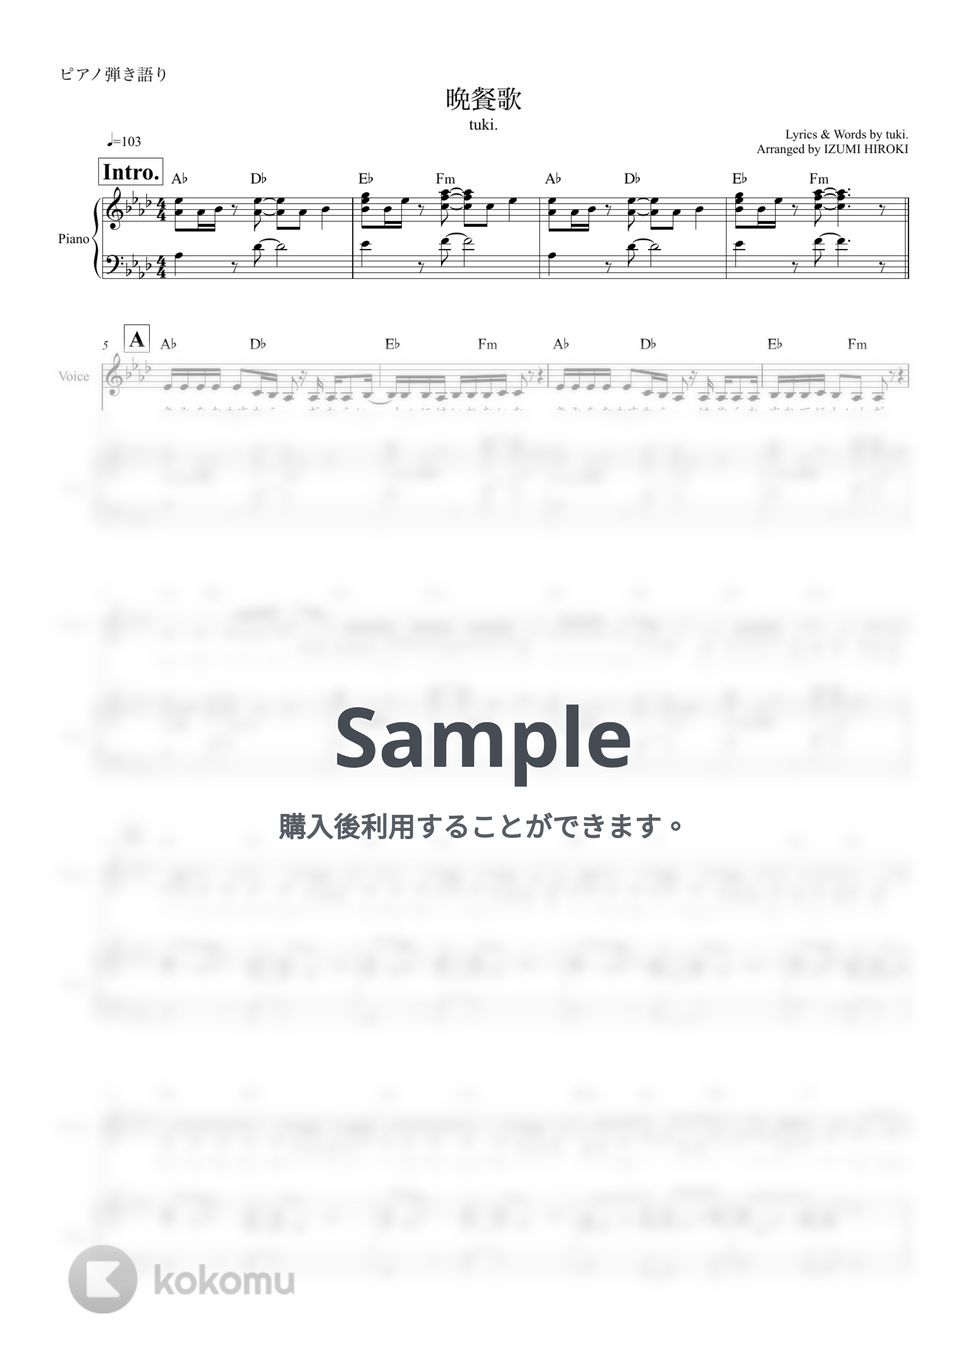 tuki. - 晩餐歌 (ピアノ弾き語り) by 泉宏樹